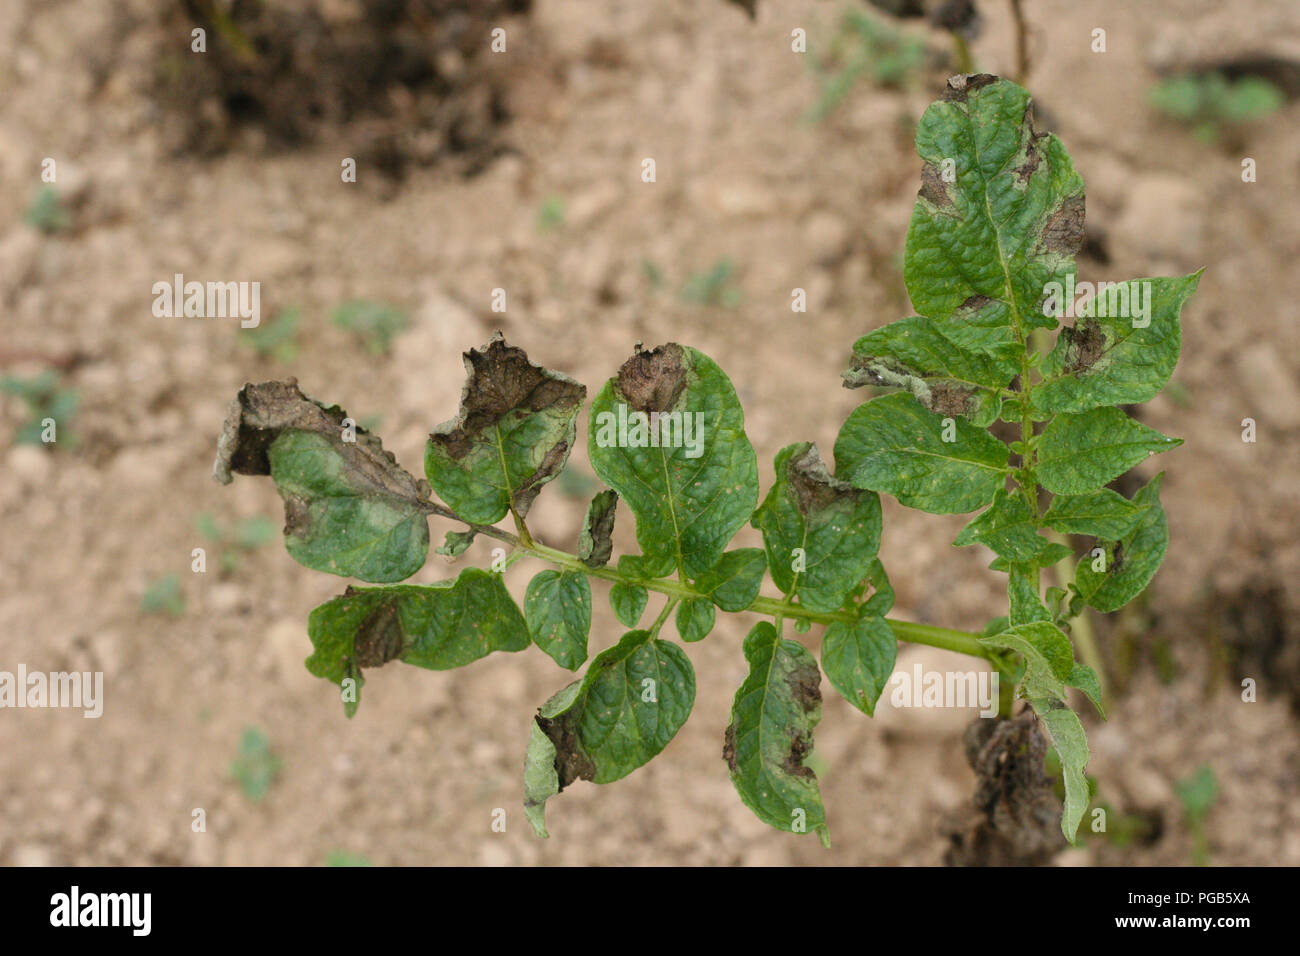 Potato late blight symptom on leaves Stock Photo